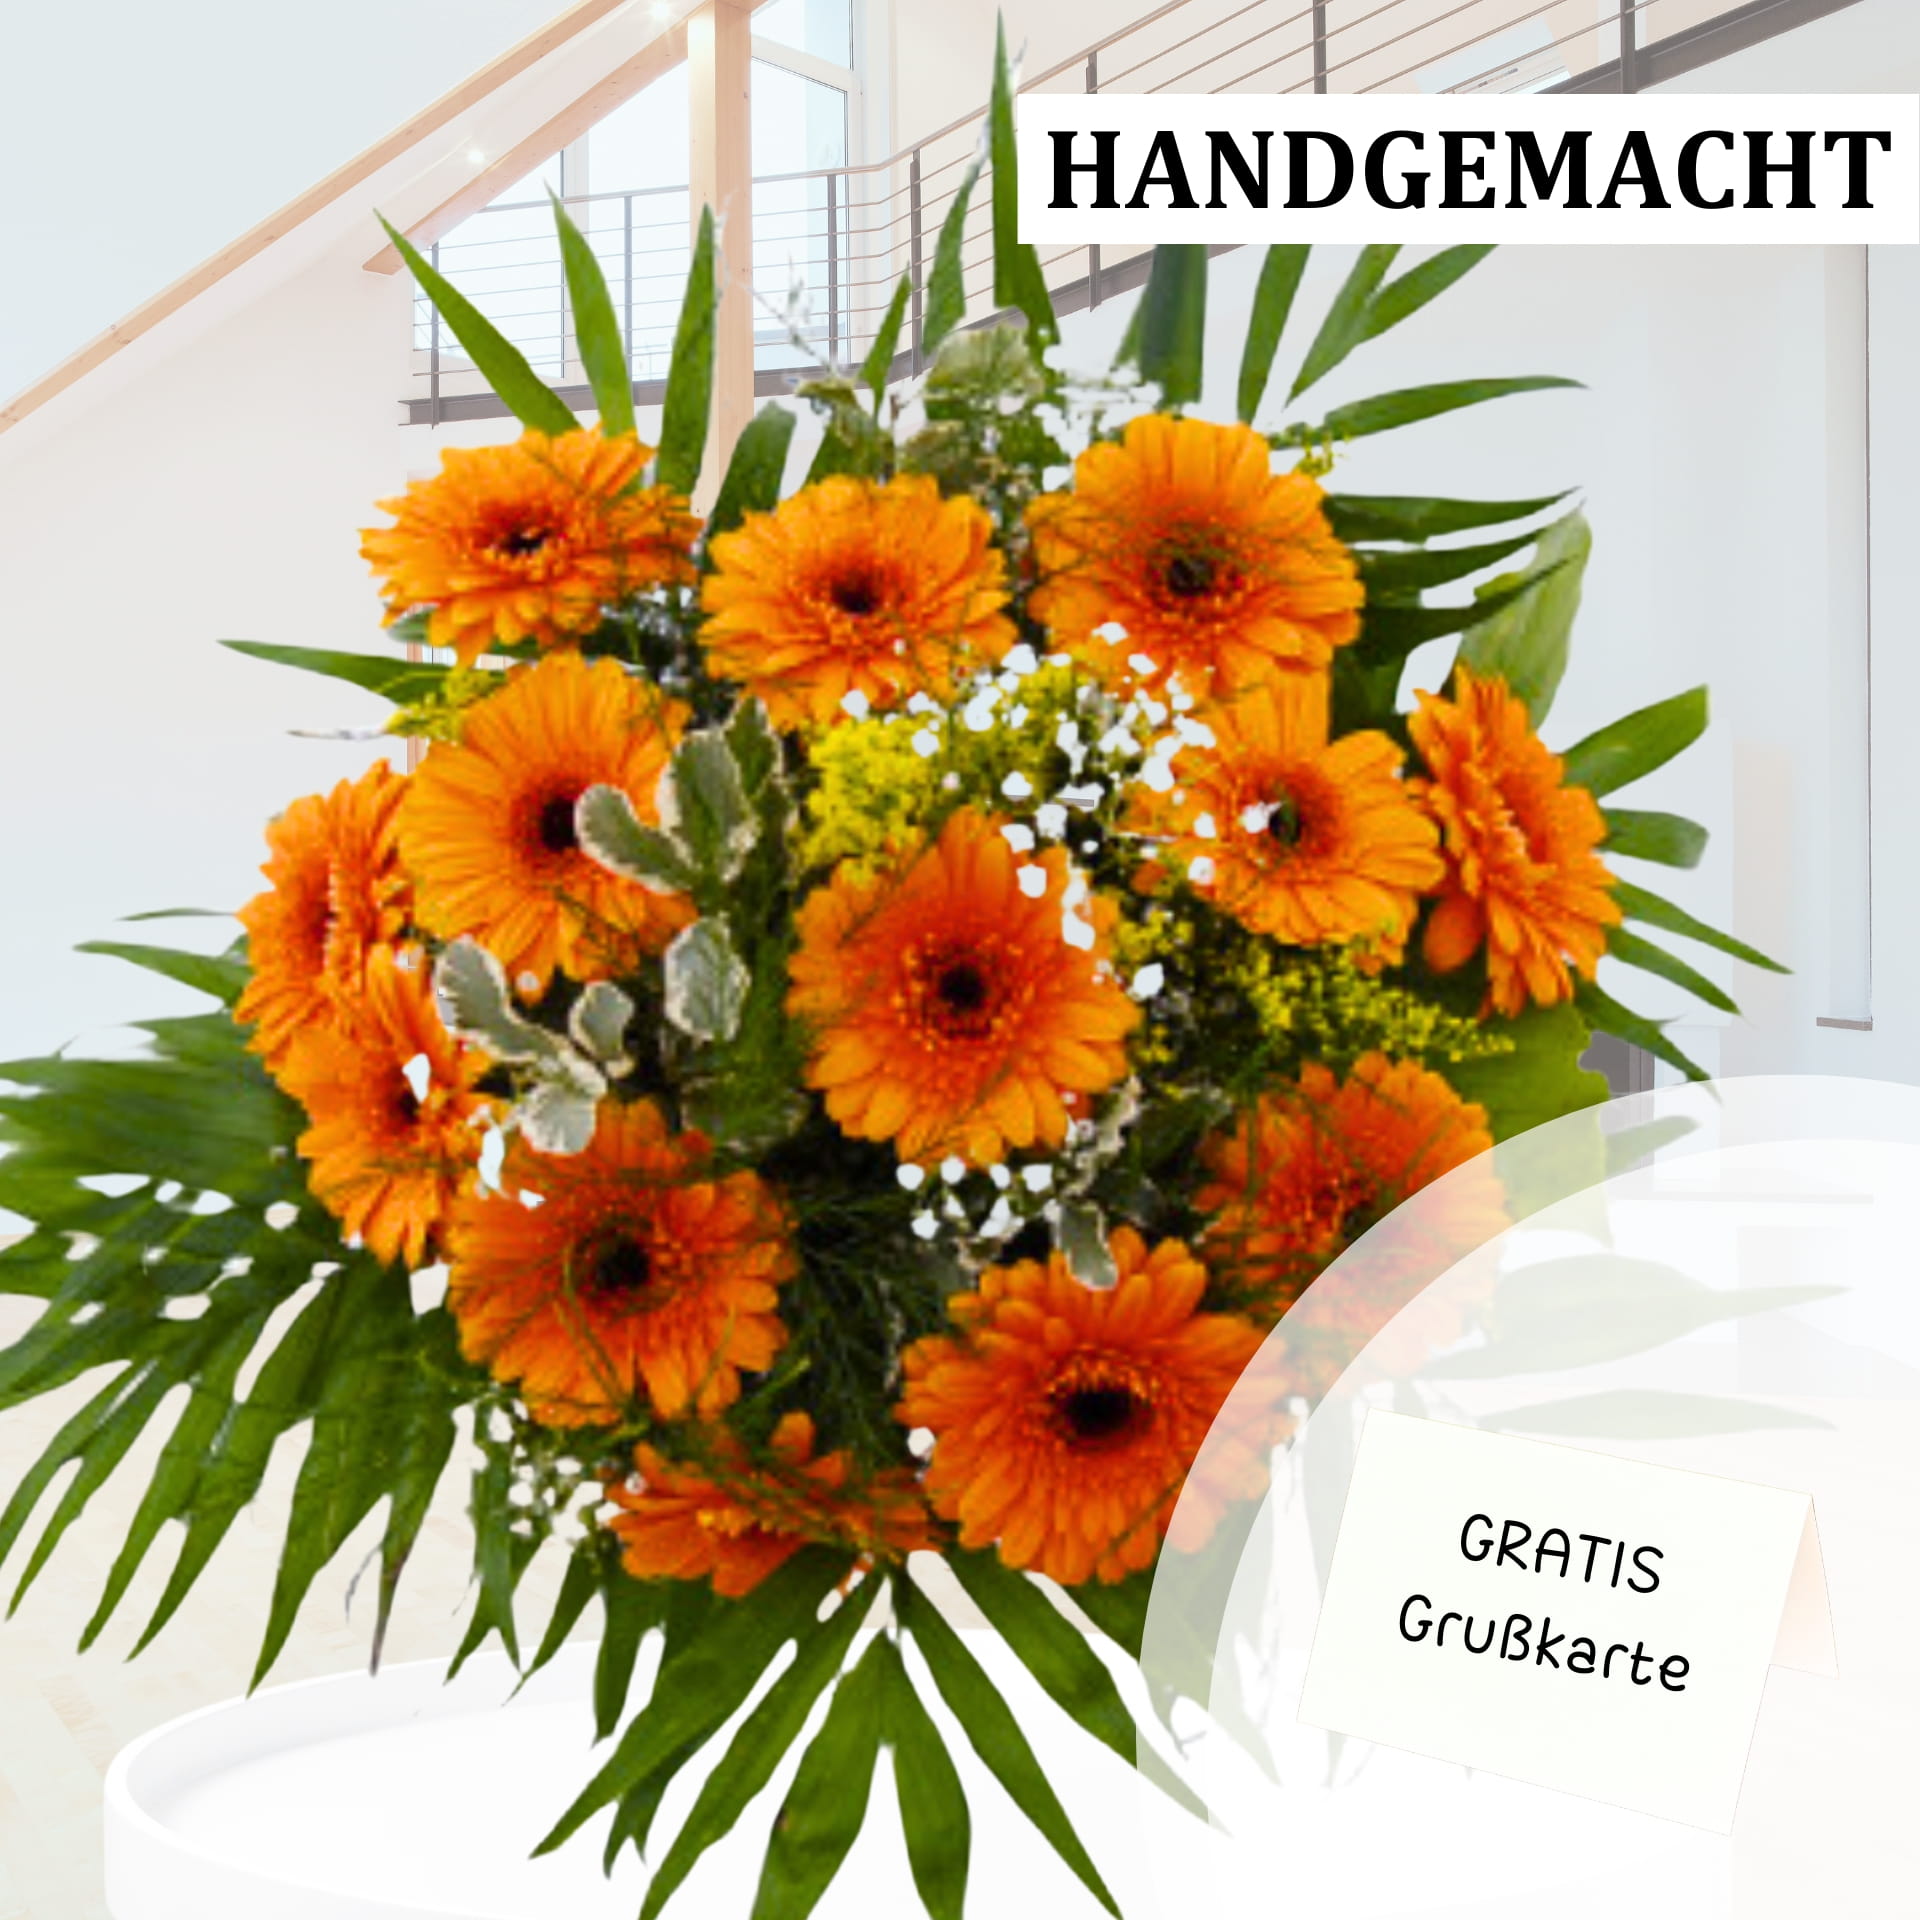 Ein wunderschöner, handgemachter Gerberastrauß in Orange. Perfekt zum Verschicken und Bestellen bei FlowersDeluxe Blumenversand. Jetzt kaufen und Freude bereiten!